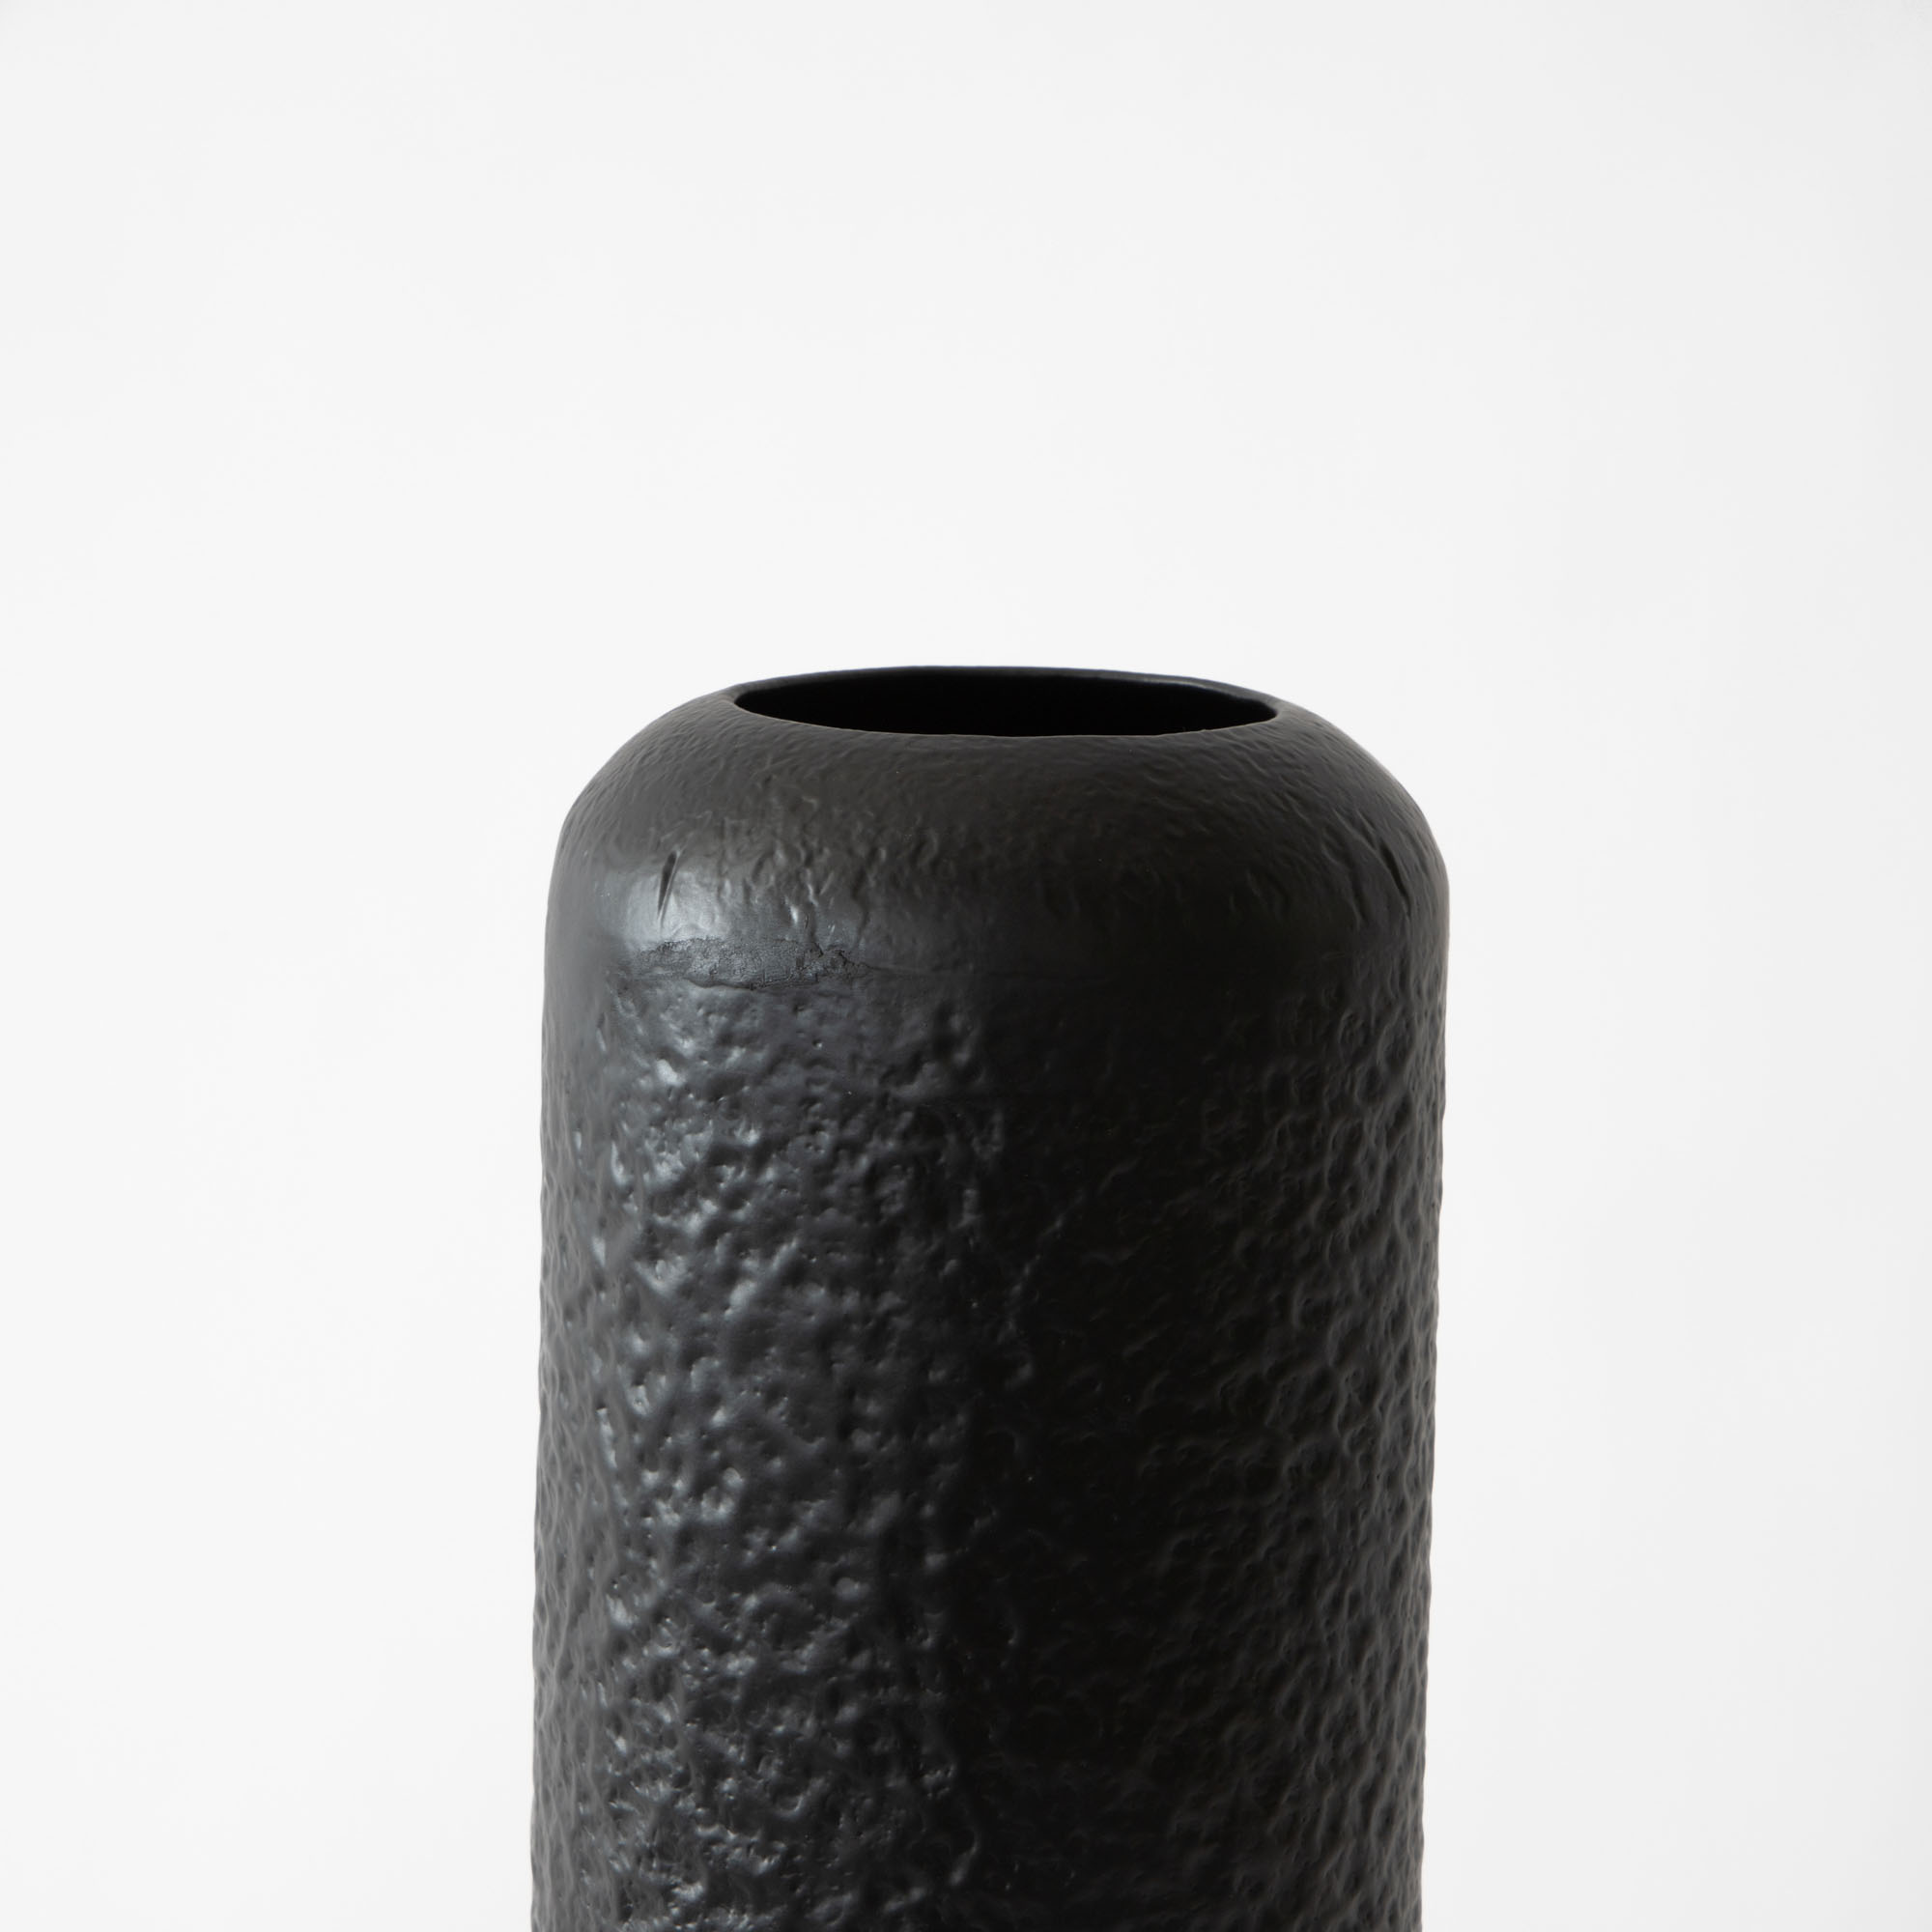 Proto Hammered Iron Vase